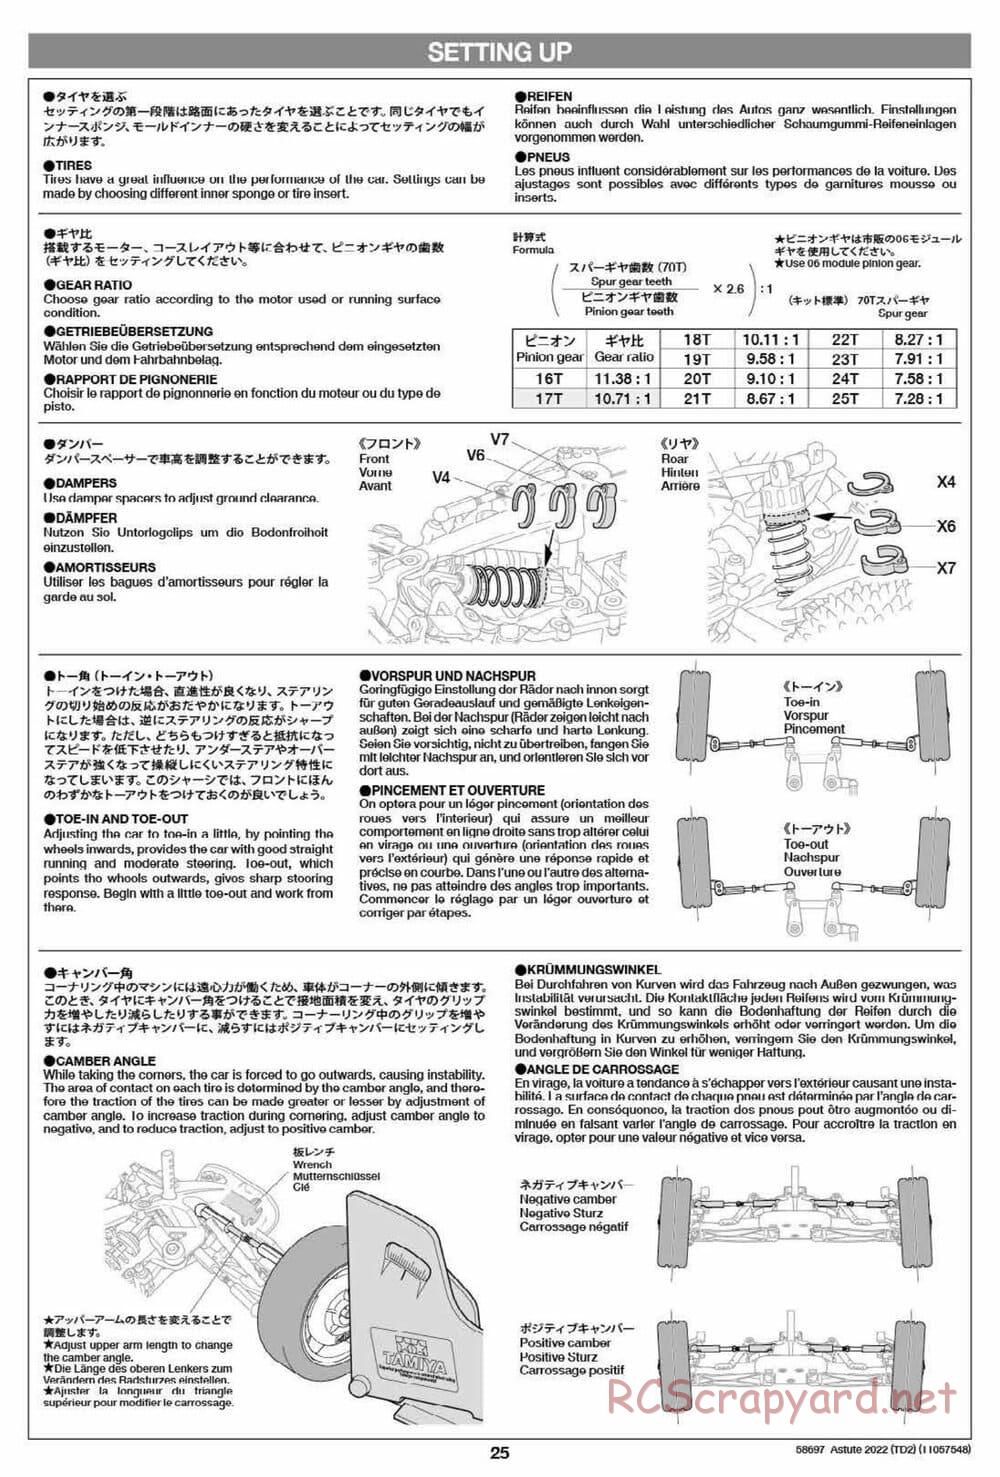 Tamiya - Astute 2022 - TD2 Chassis - Manual - Page 25